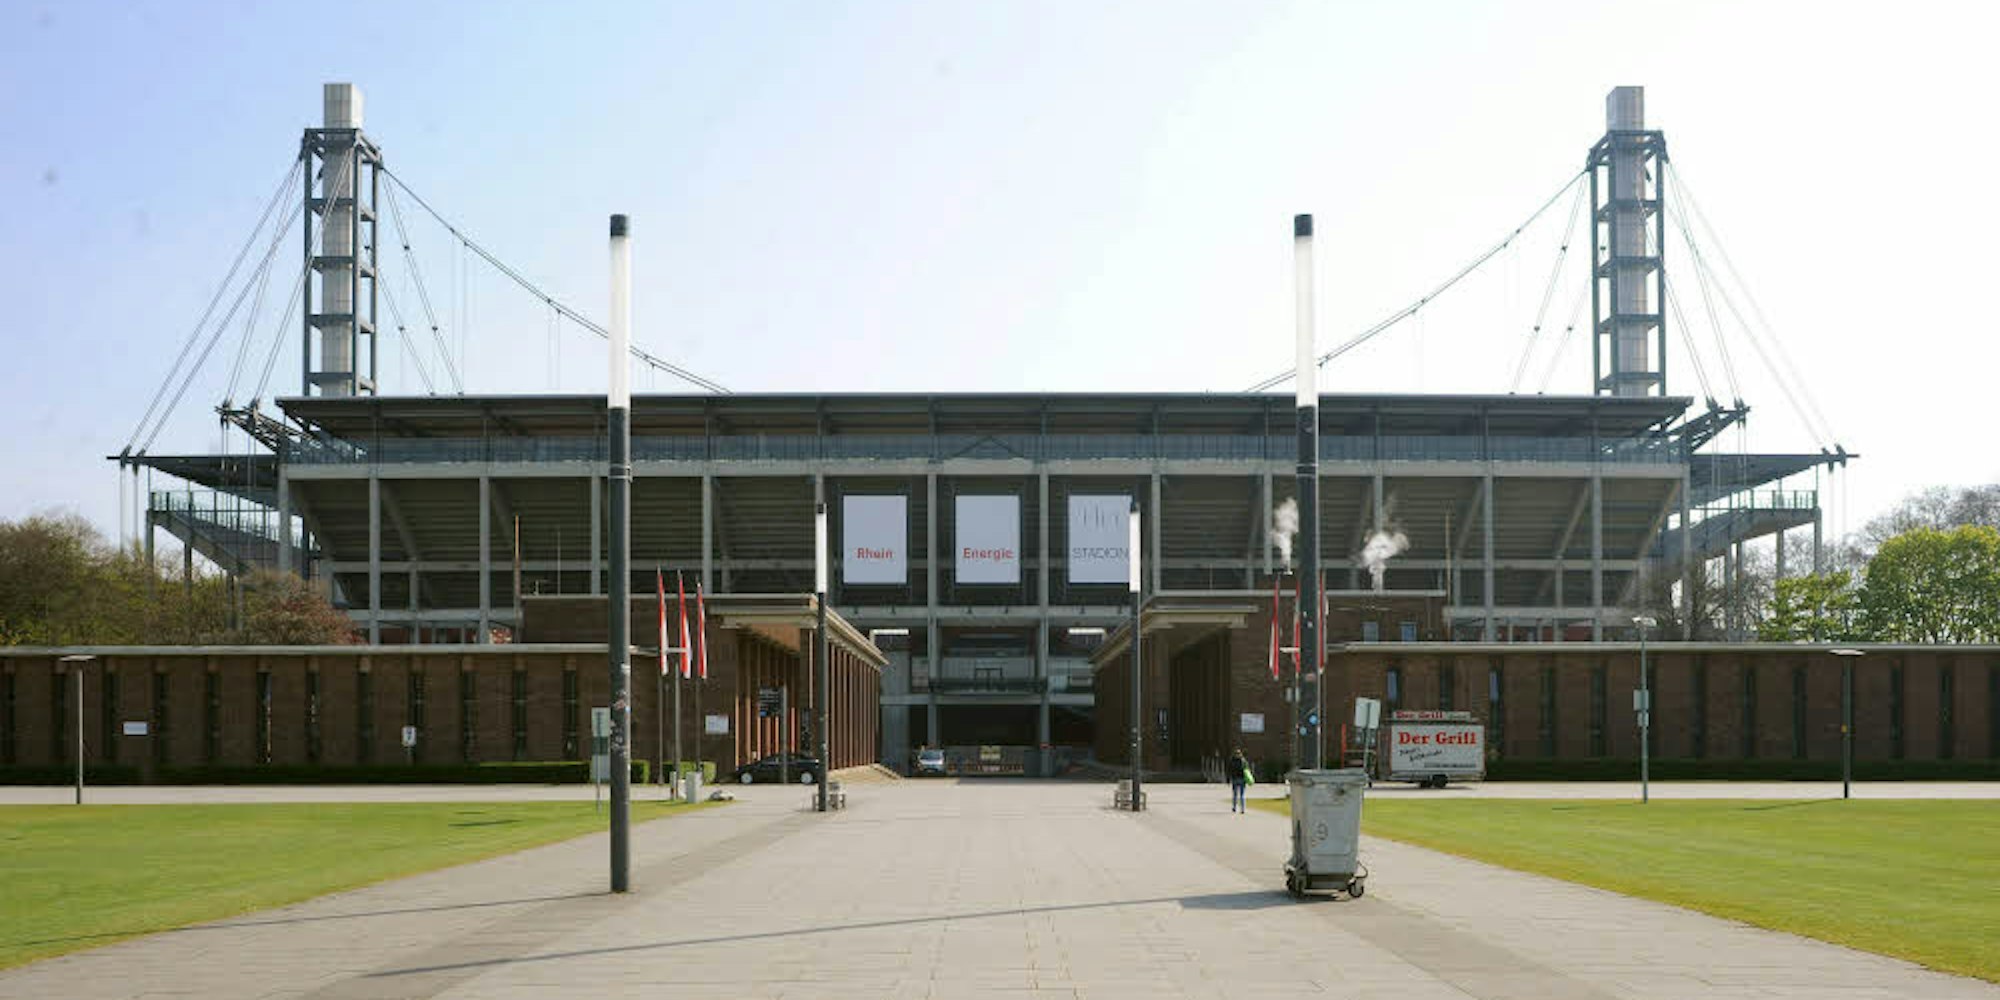 Das RheinEnergie-Stadion in Köln-Müngersdorf 